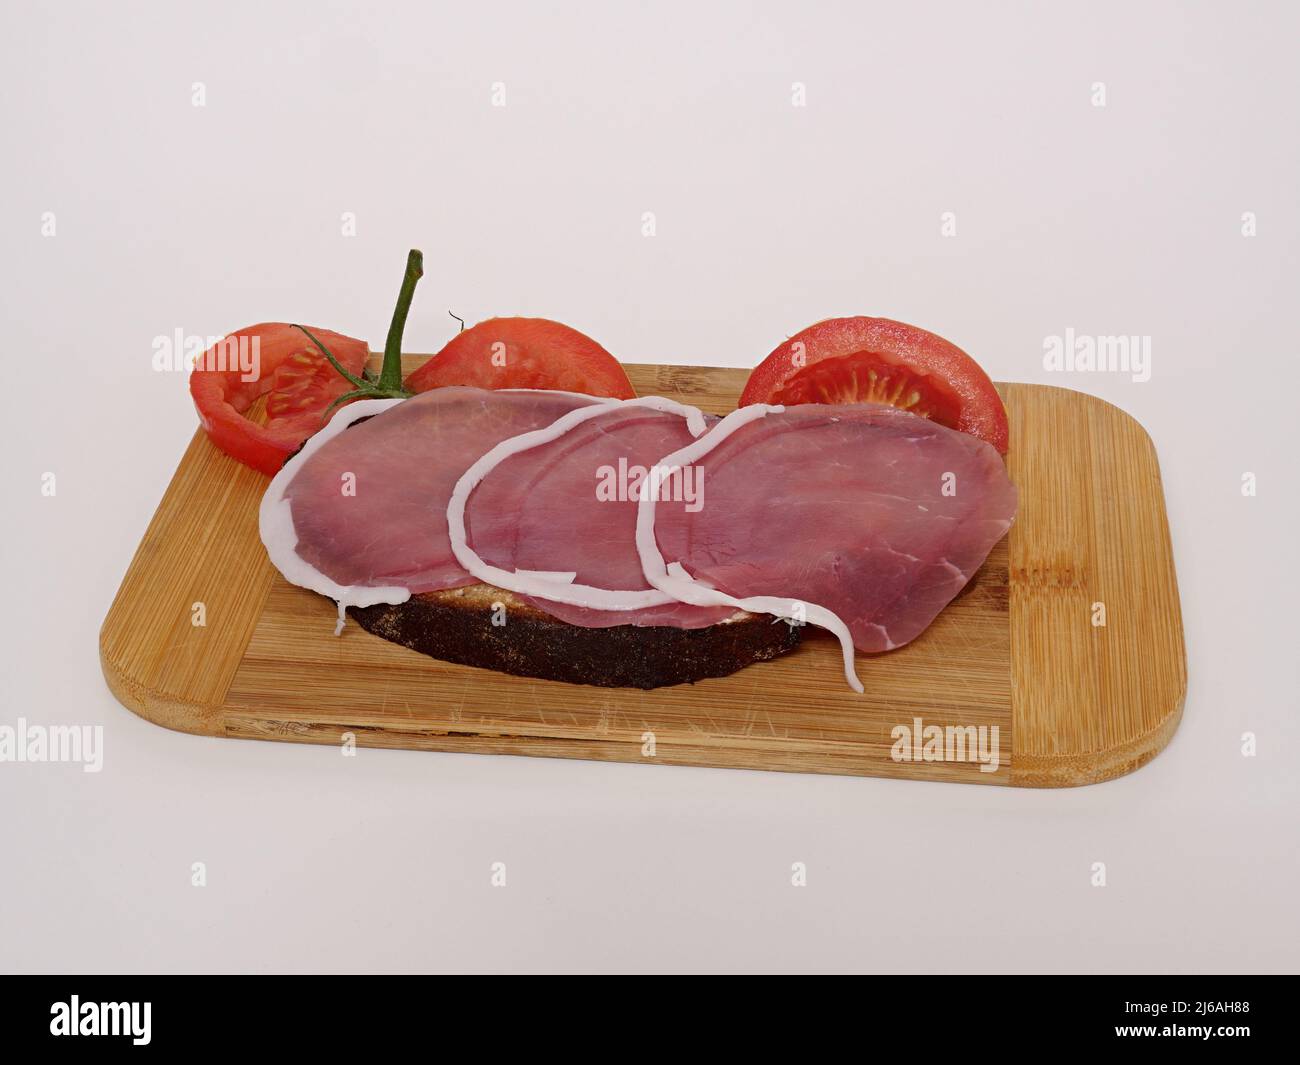 Ham sandwich, salmon ham, on a breakfast board Stock Photo